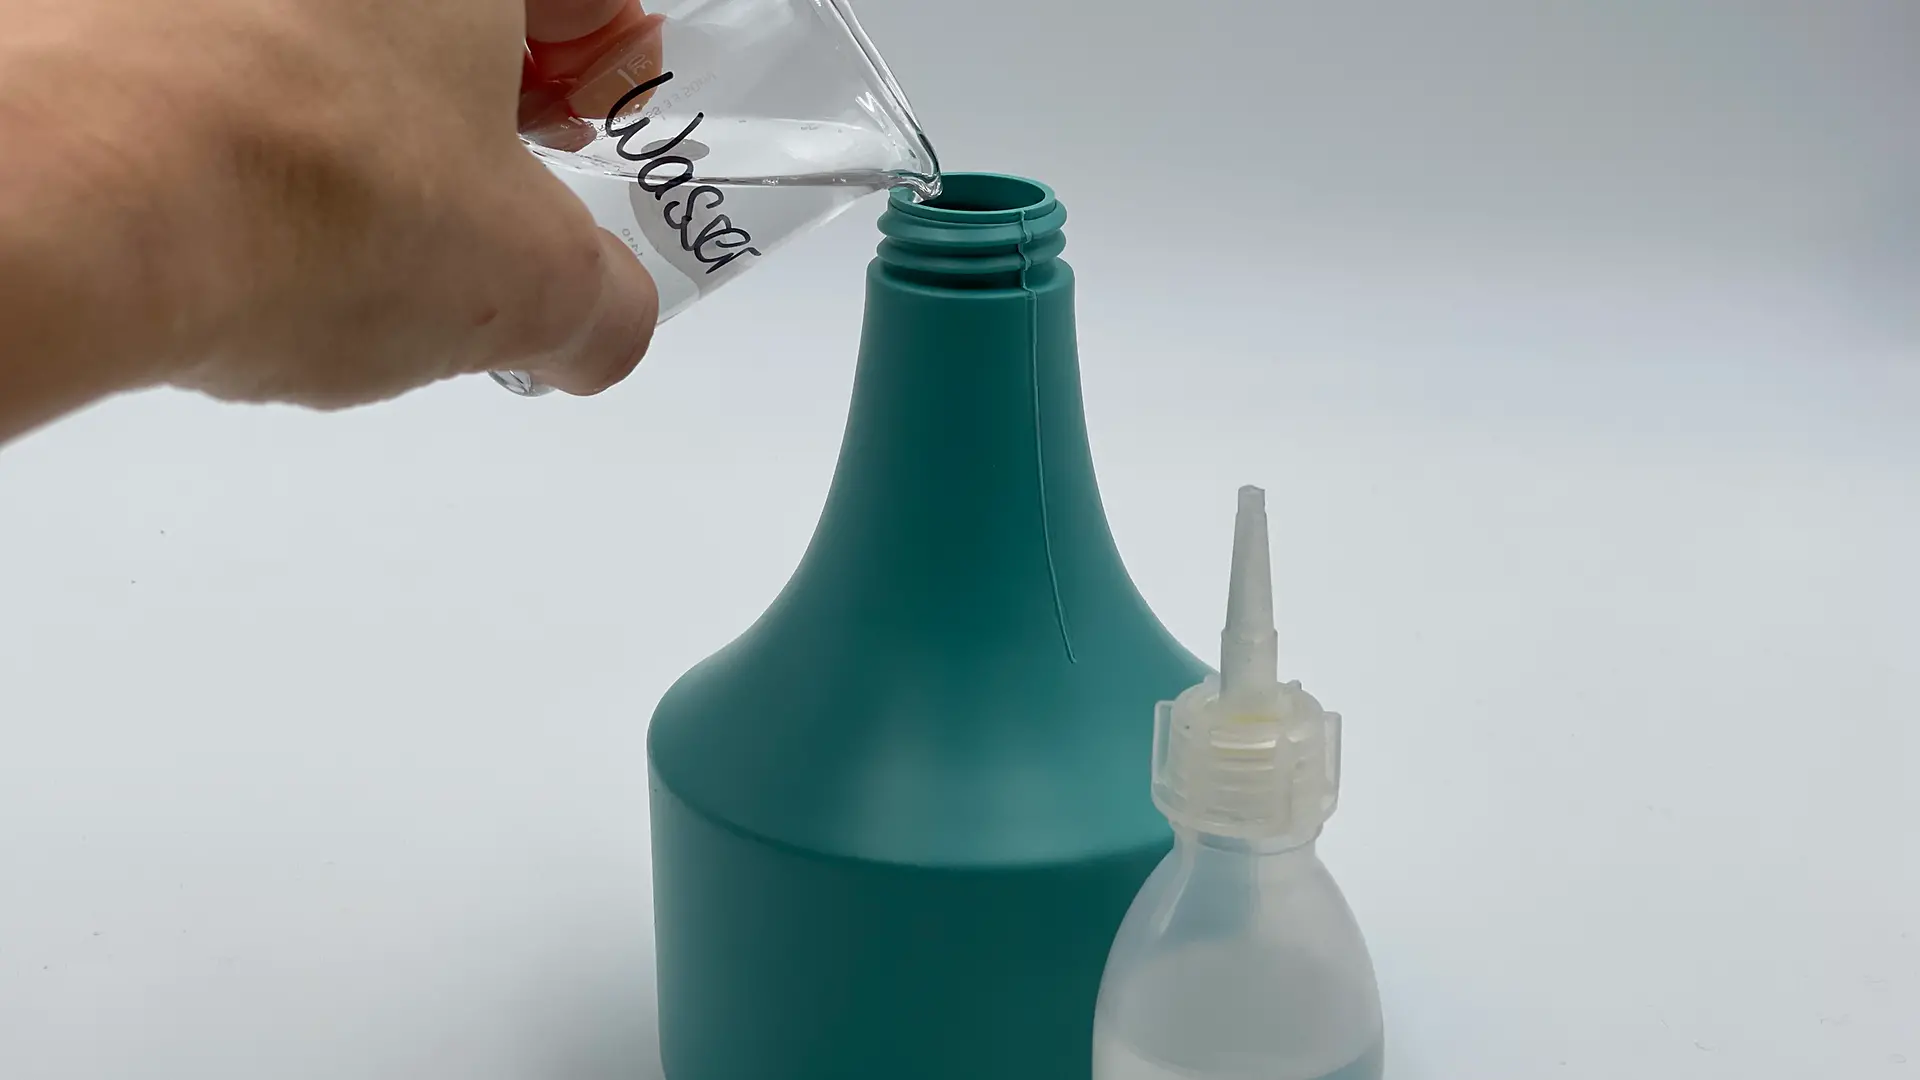 Sprühflasche, die per Hand mit Wasser- und Öl-Mischung gefüllt wird